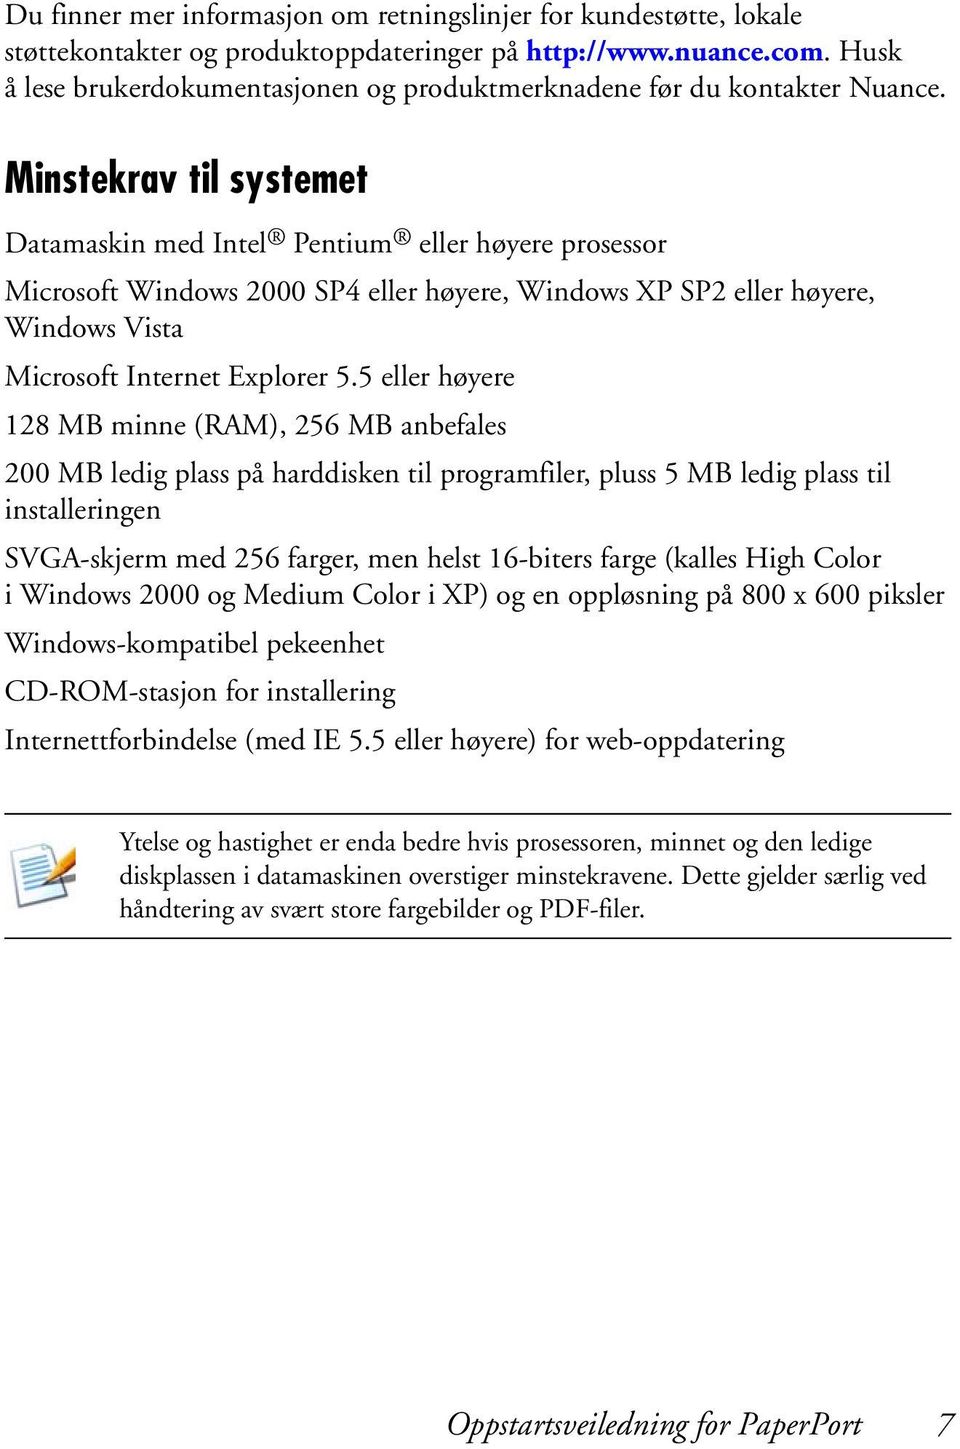 Minstekrav til systemet Datamaskin med Intel Pentium eller høyere prosessor Microsoft Windows 2000 SP4 eller høyere, Windows XP SP2 eller høyere, Windows Vista Microsoft Internet Explorer 5.